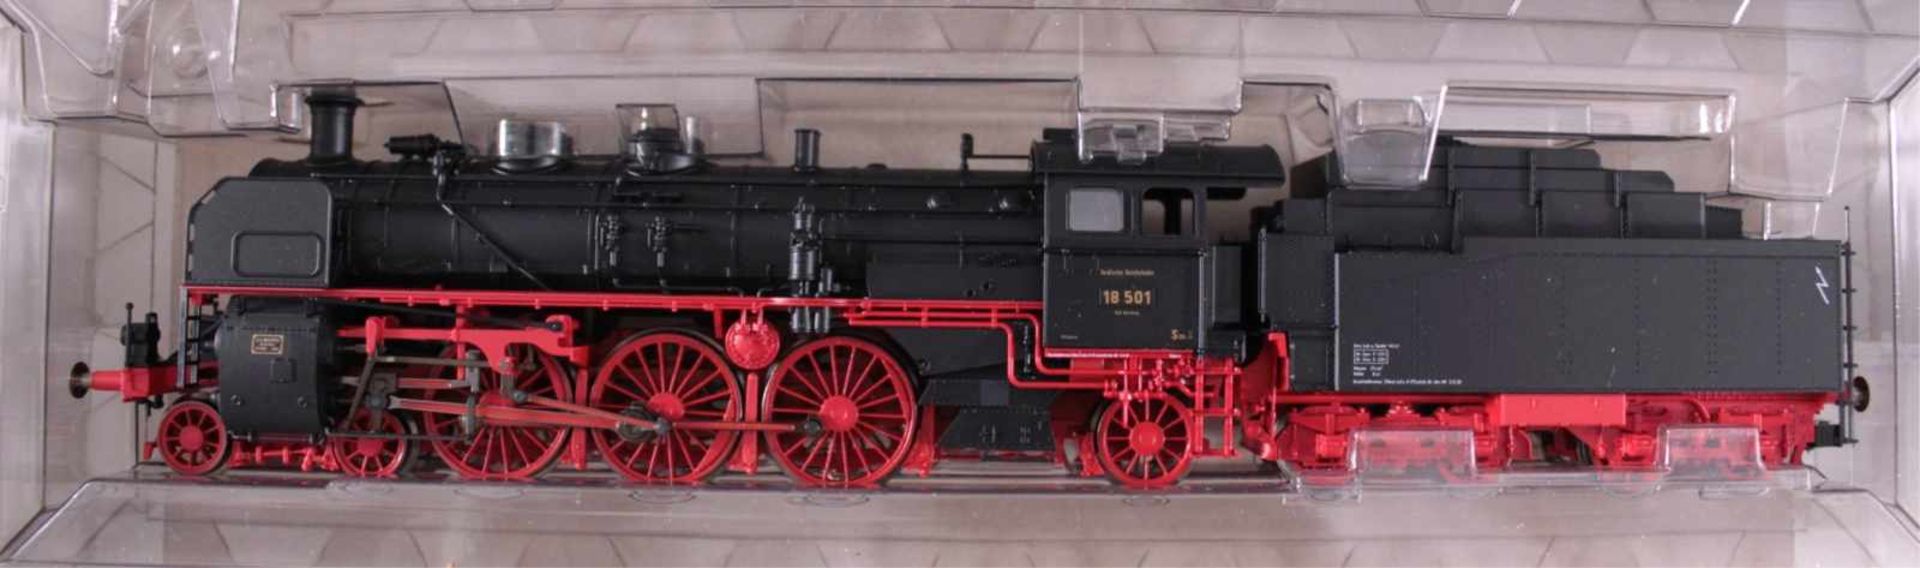 Fleischmann Dampf-Lok 4119 Spur H0 und 8 GüterwaggonsUnbespielt und in der Originalverpackung, - Bild 2 aus 2